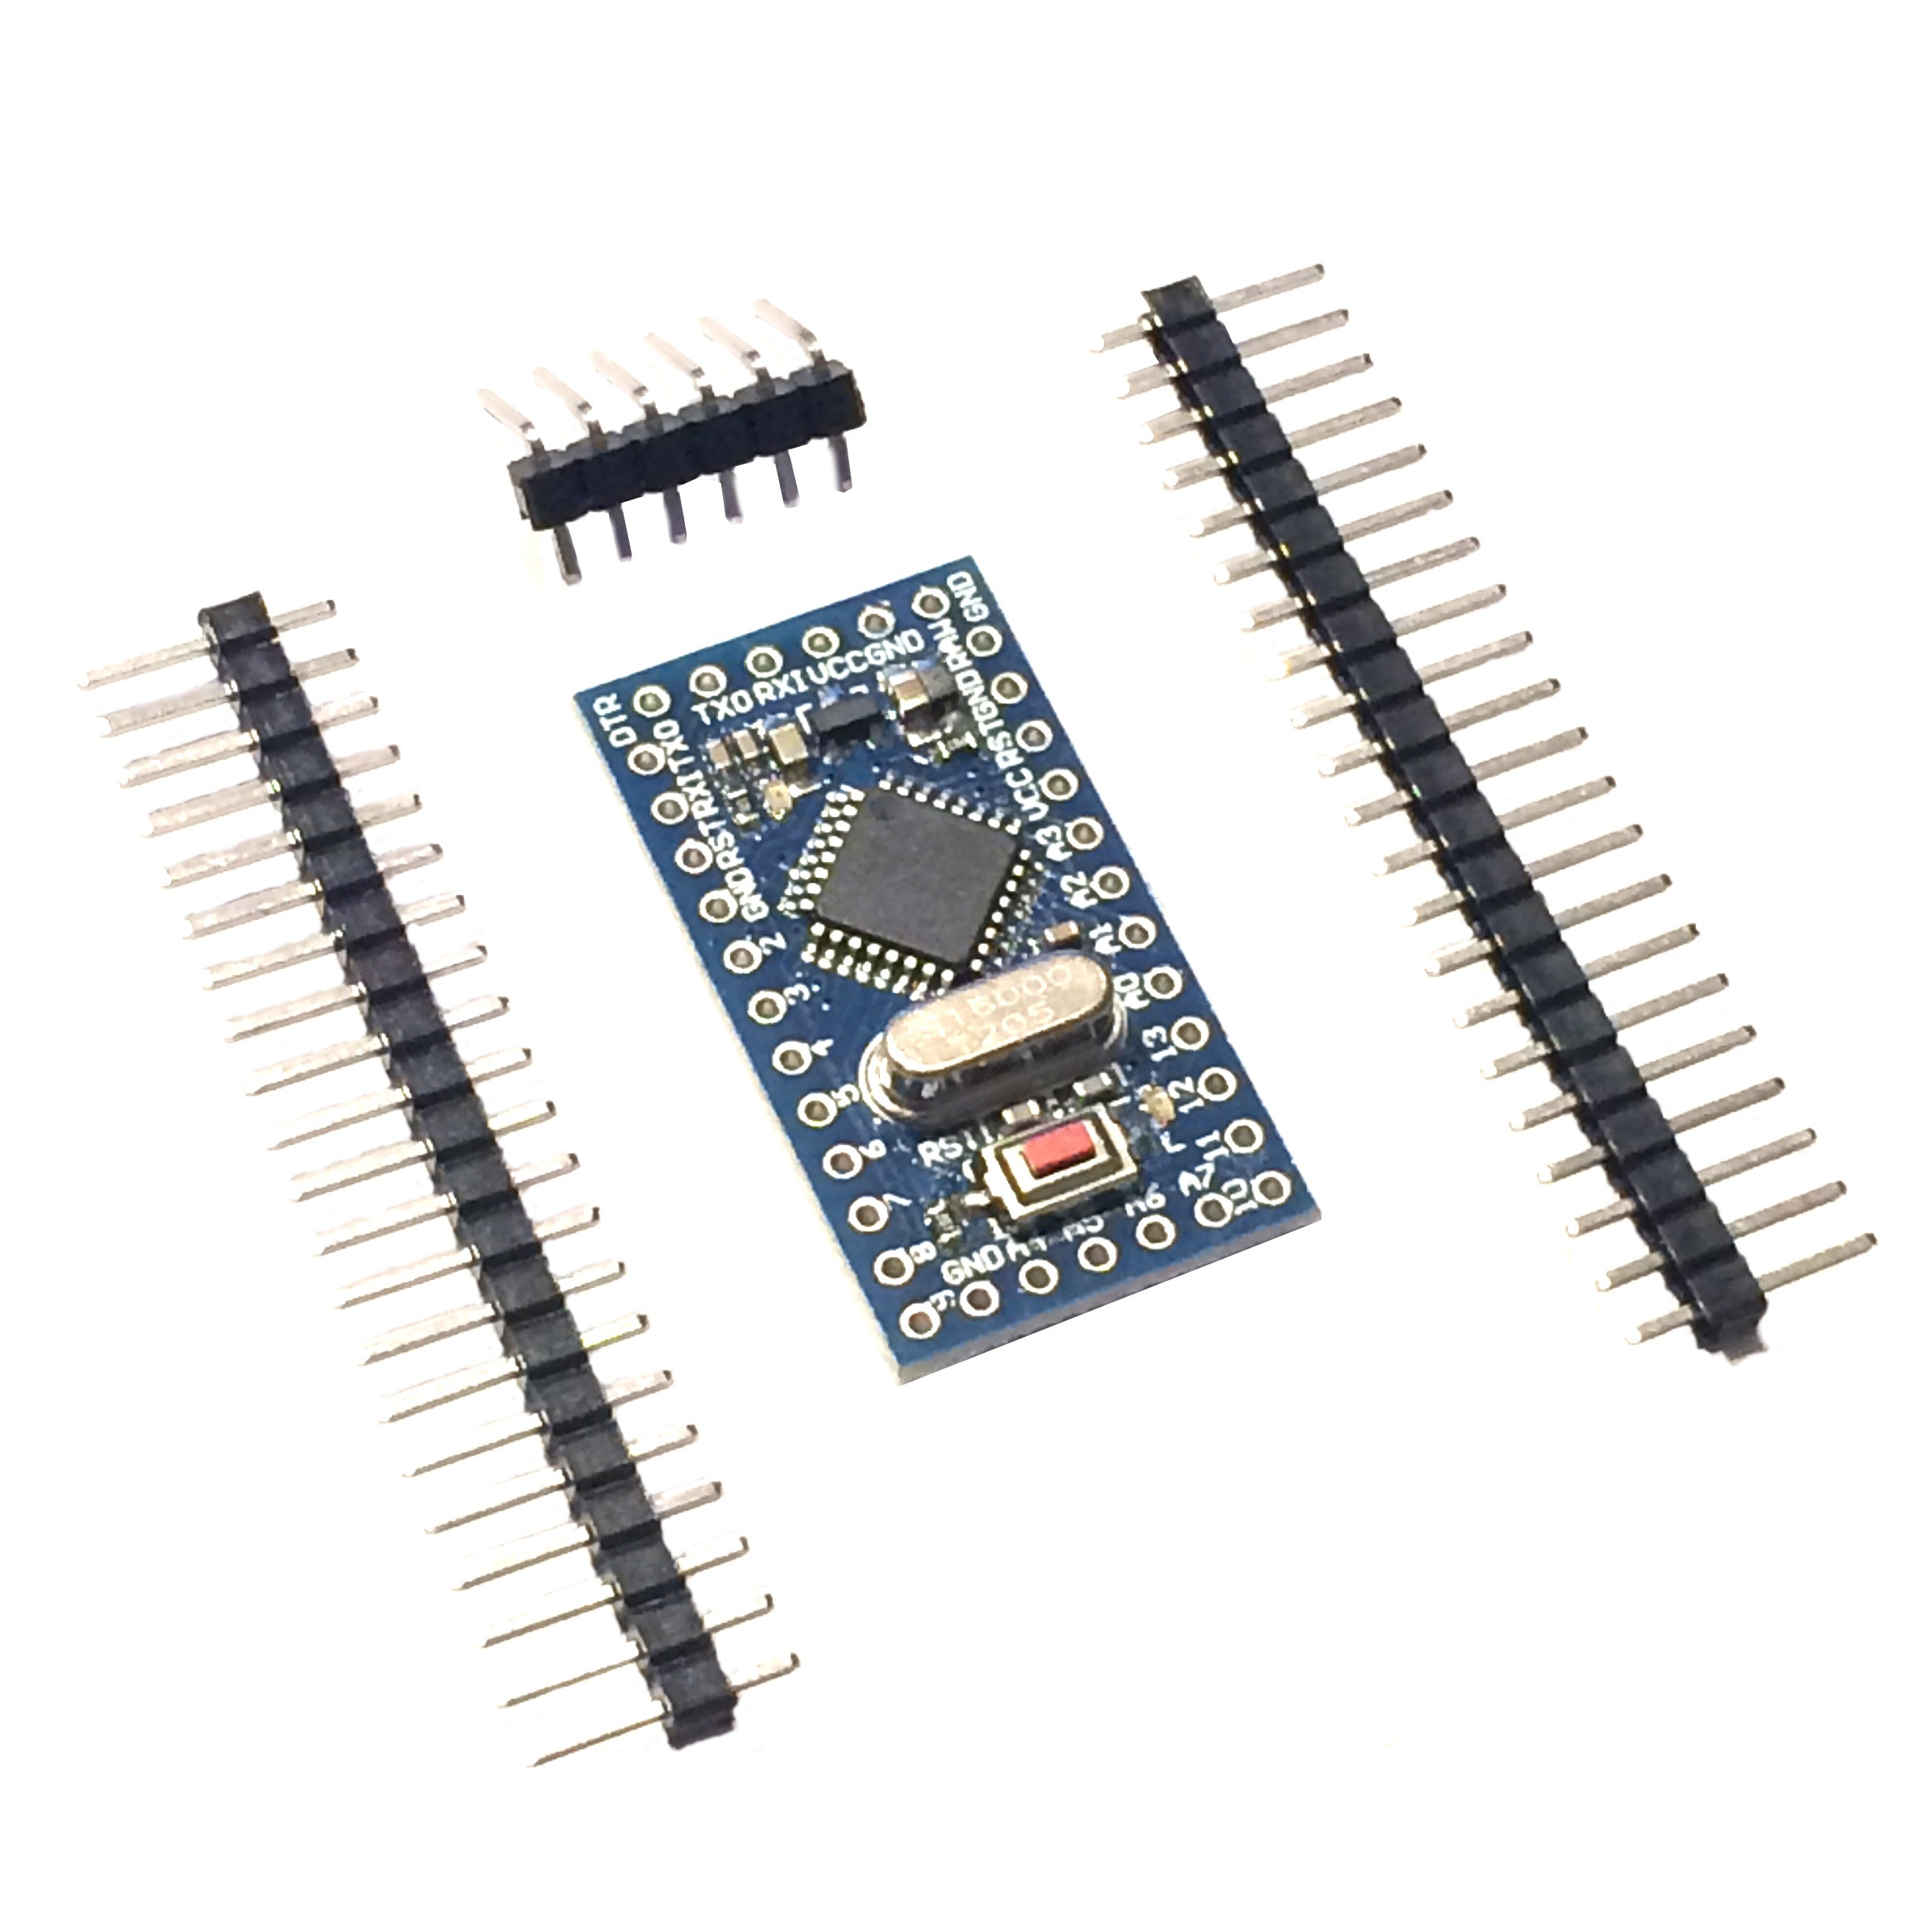 Redesign Pro Mini Atmega168 5V 16M For Arduino Compatible Nano Replace Atmega328